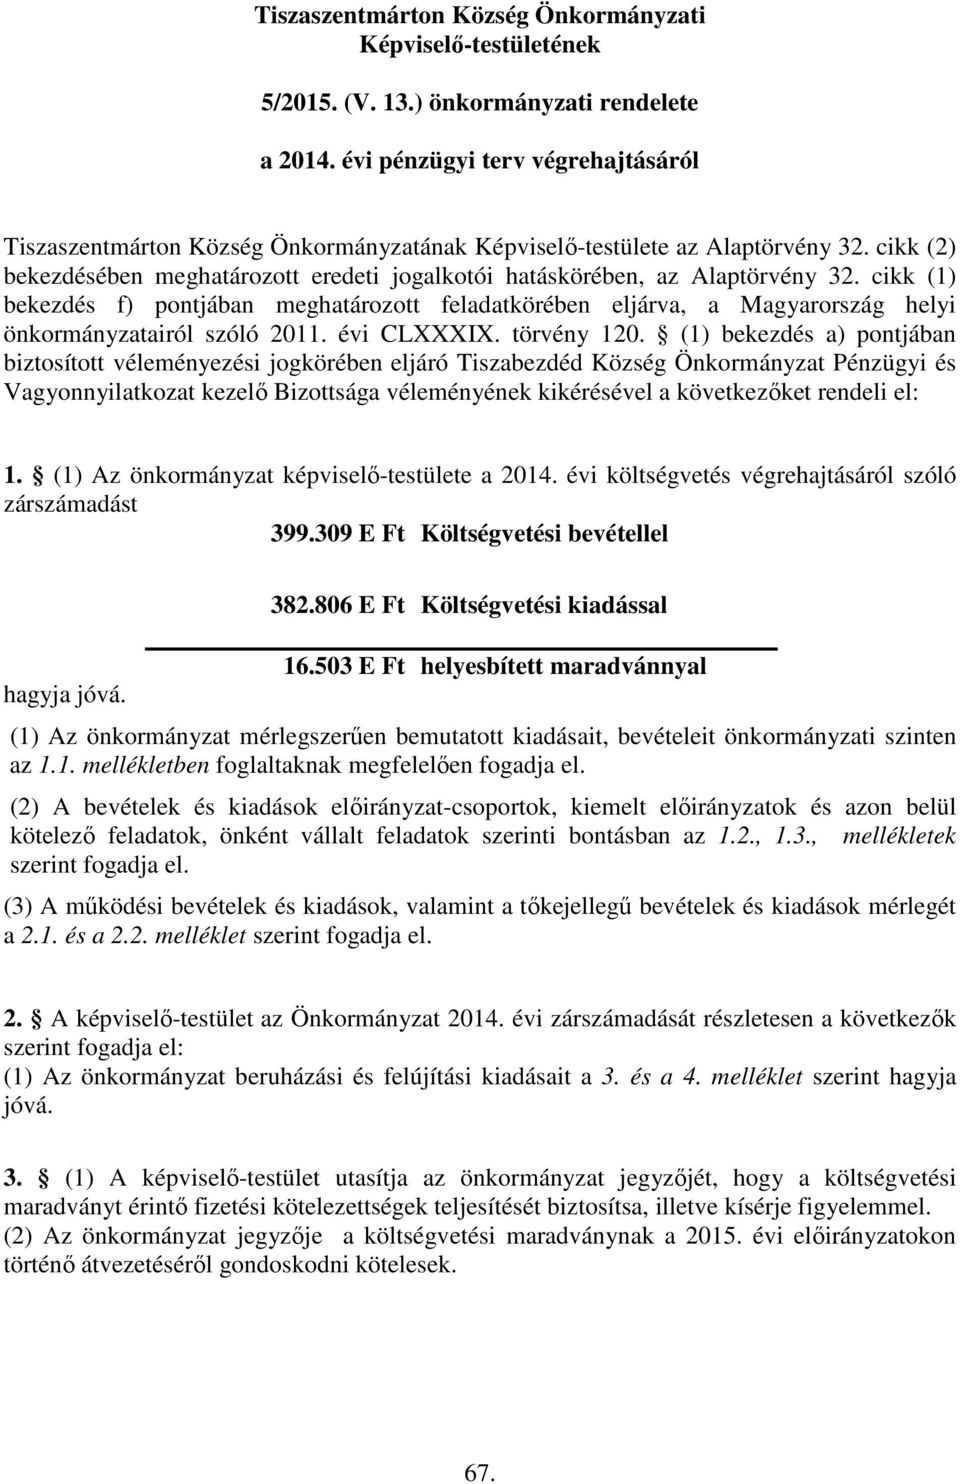 cikk (1) bekezdés f) pontjában meghatározott feladatkörében eljárva, a Magyarország helyi önkormányzatairól szóló 2011. évi CLXXXIX. törvény 120.